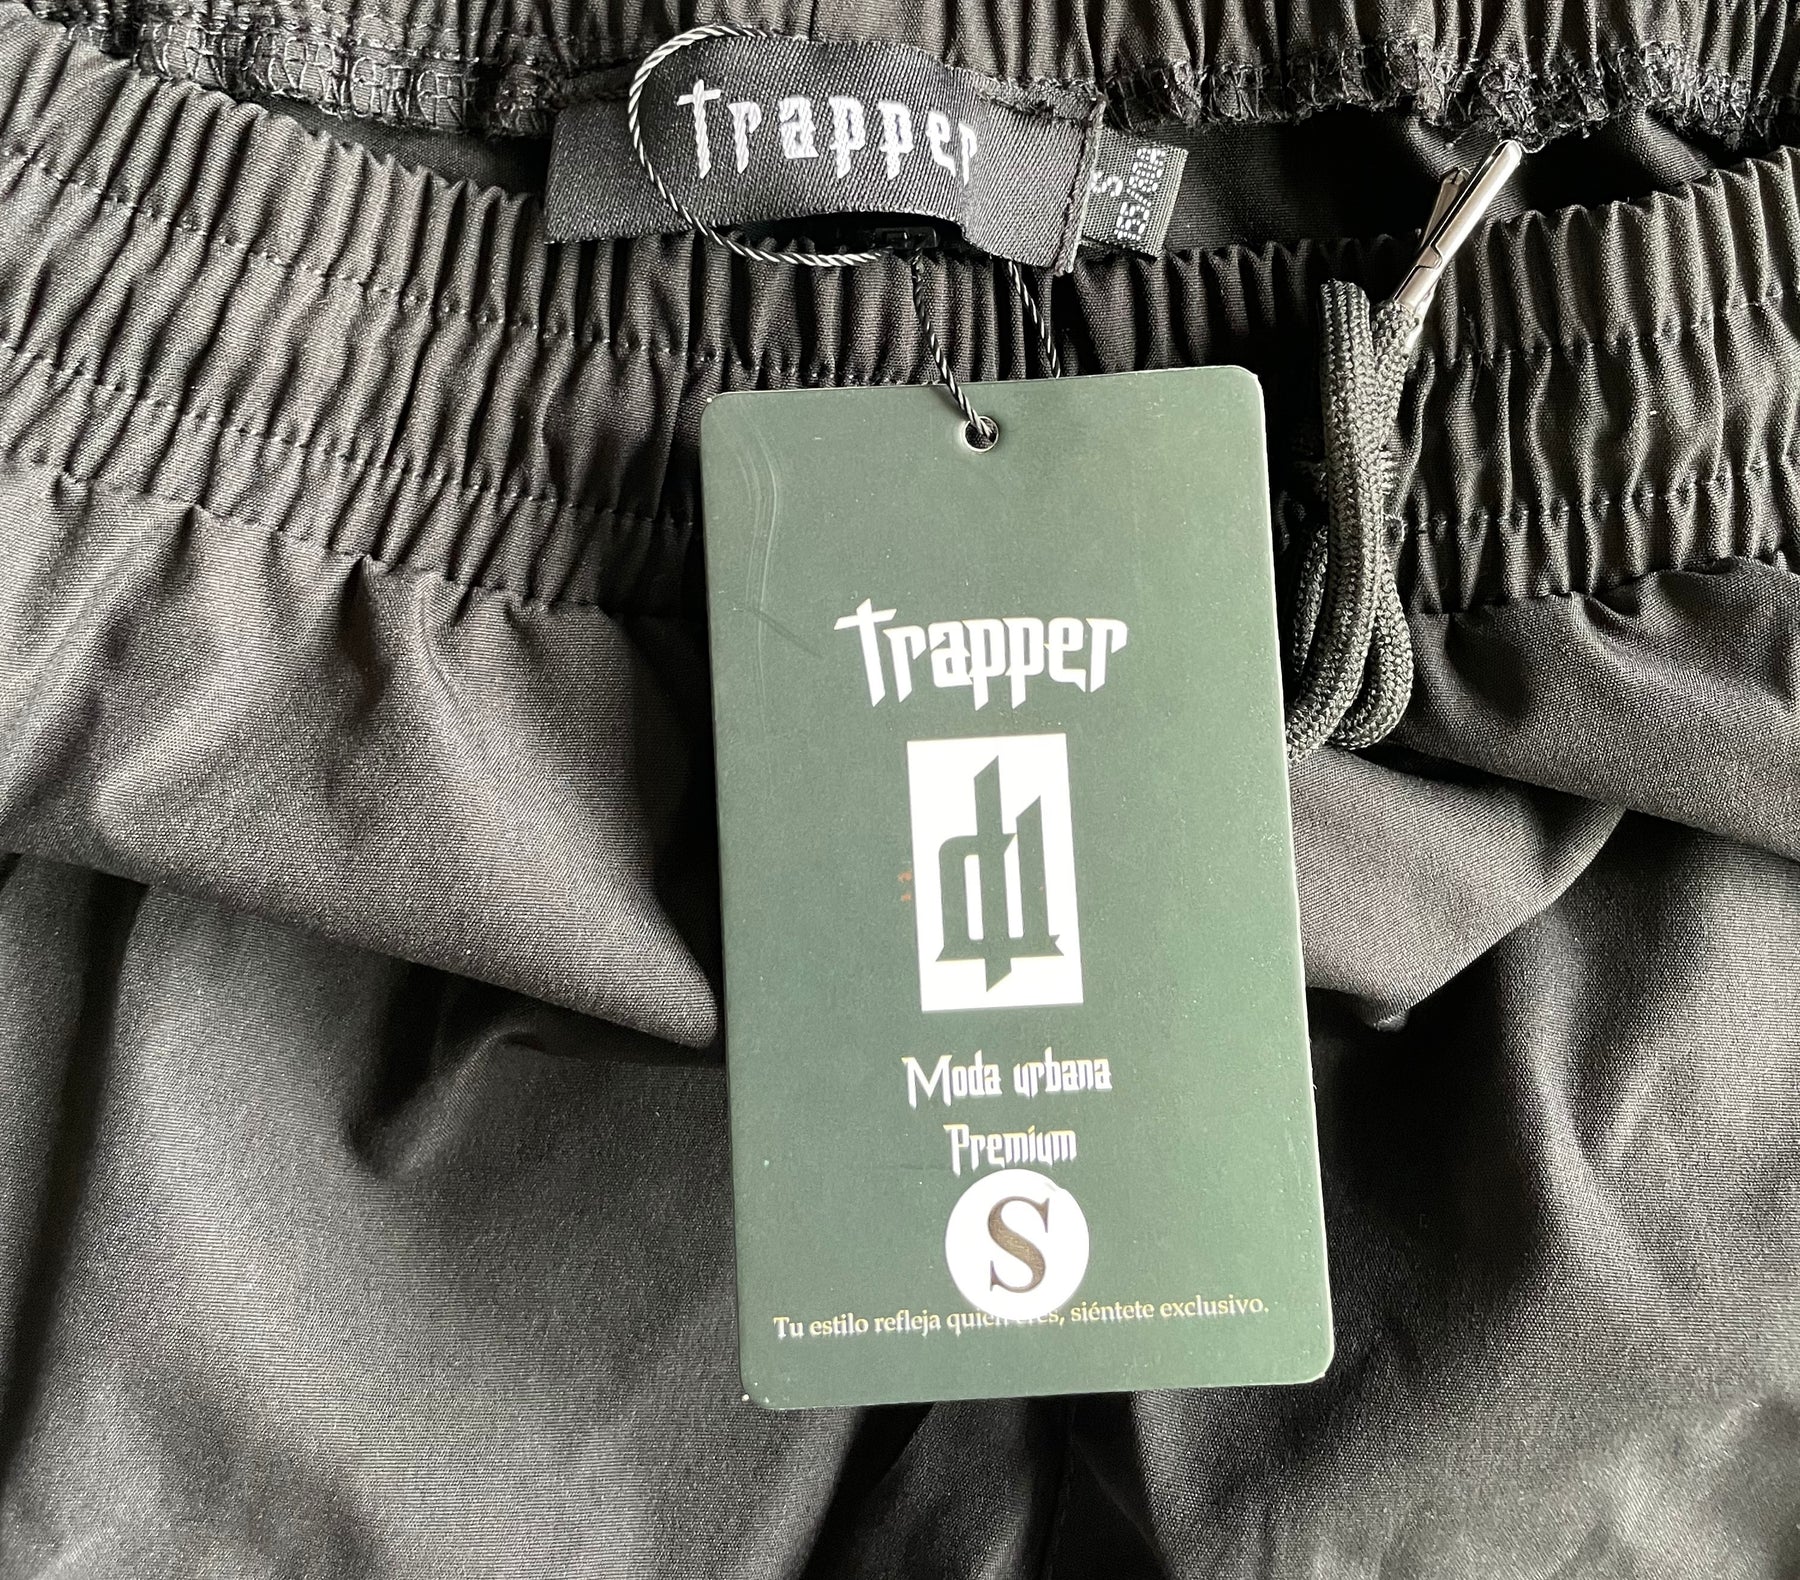 ᐅ La mejor ropa Trapper】| Trapper Marca Oficial